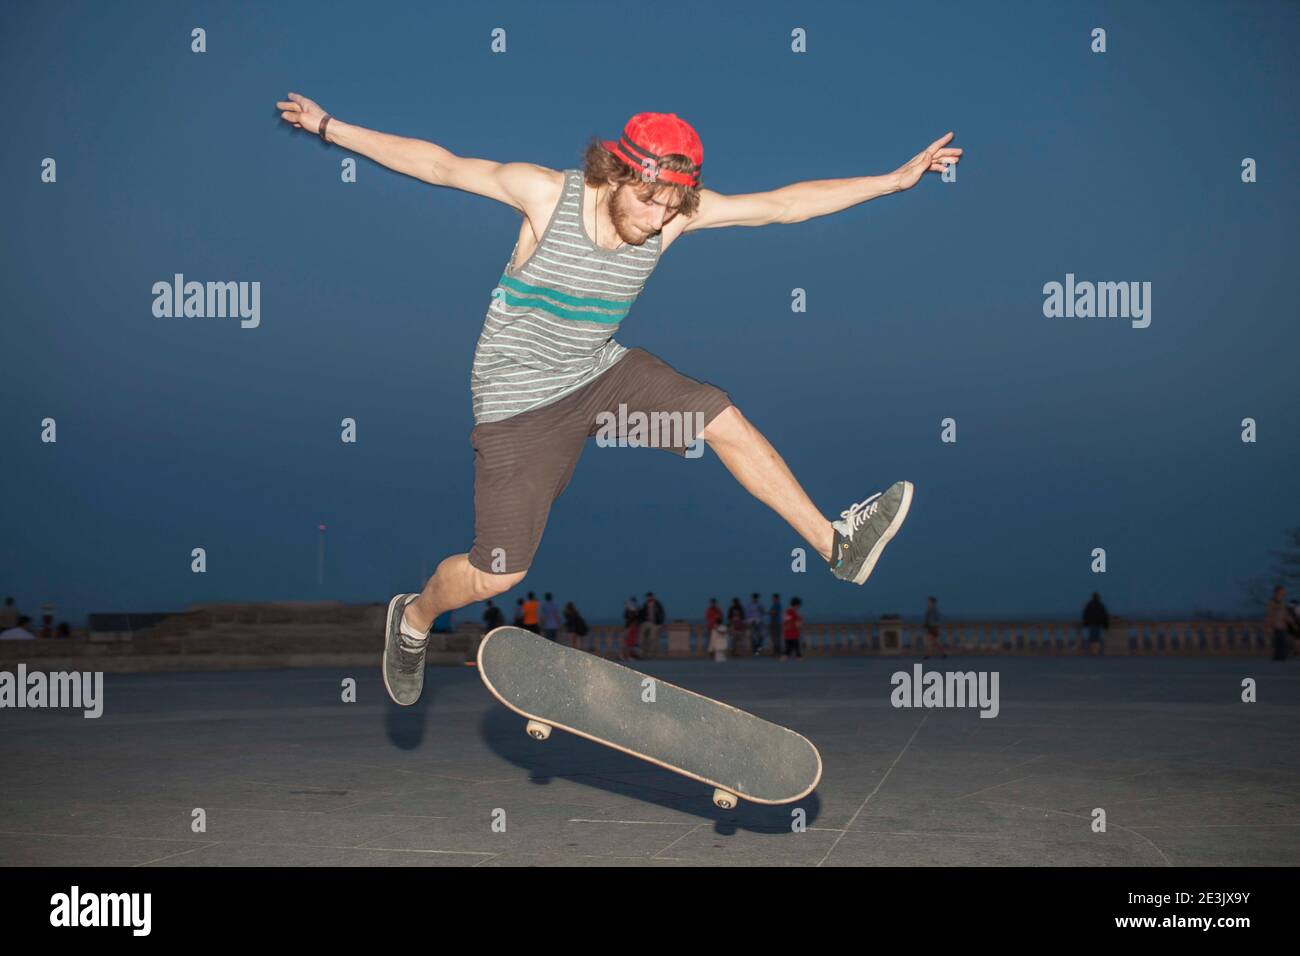 Les jeunes amateurs de skateboard son flpping à nuit Banque D'Images